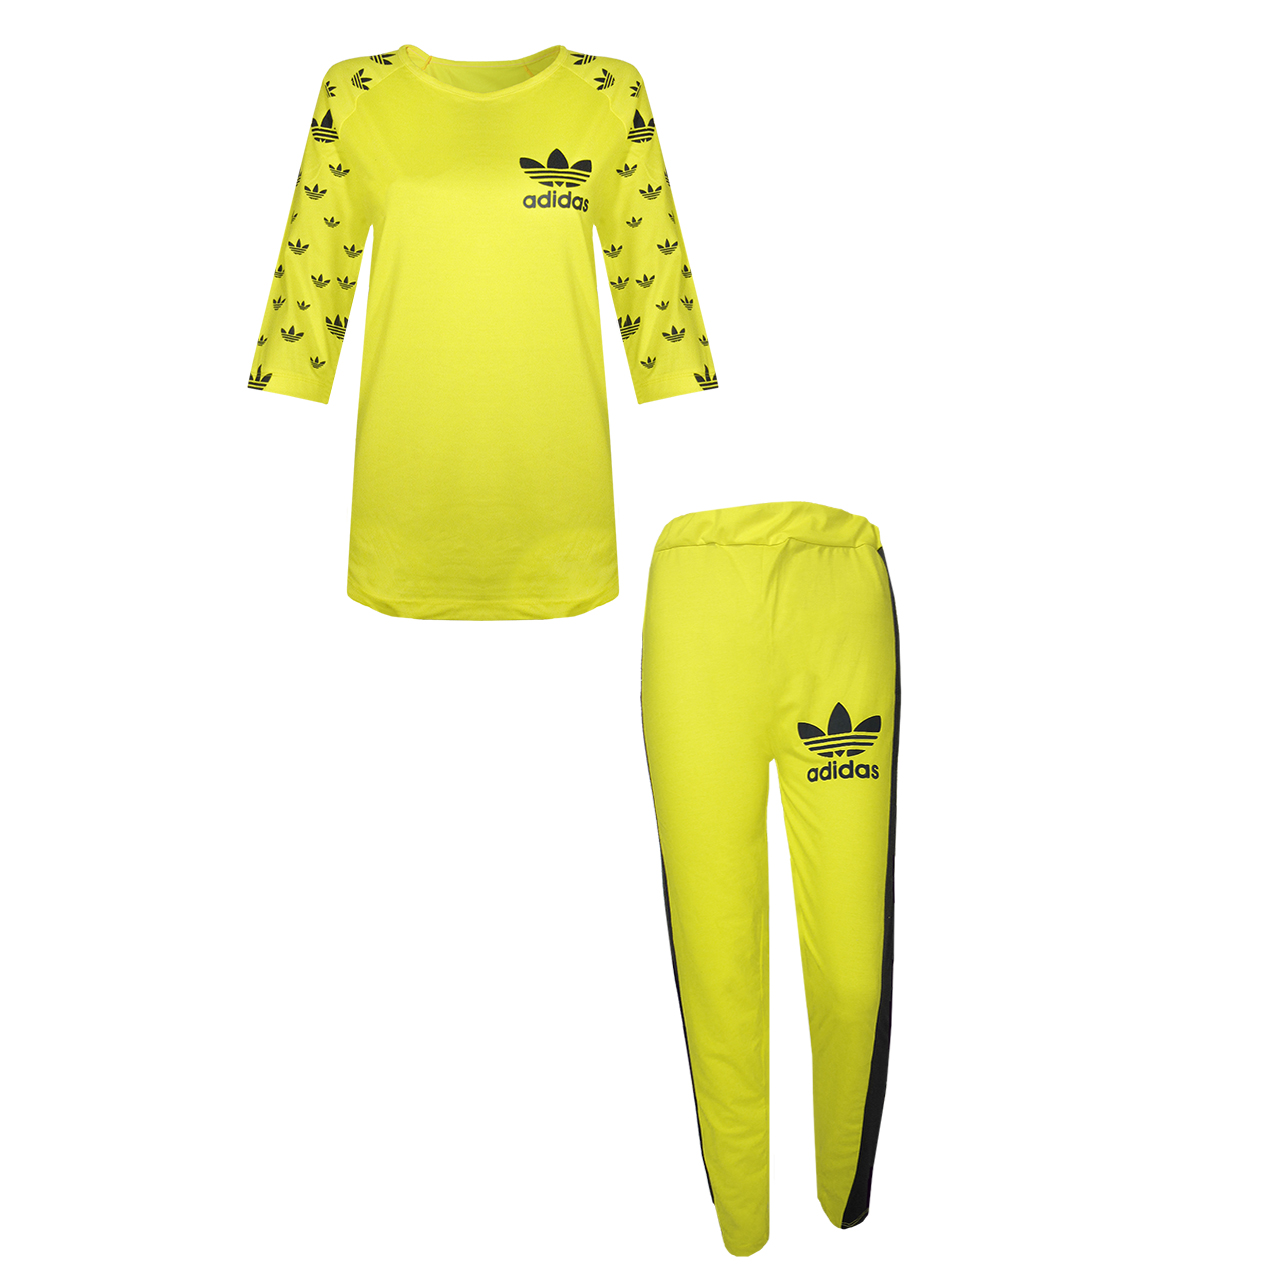 ست تی شرت و شلوار ورزشی زنانه مدل B1730 رنگ زرد